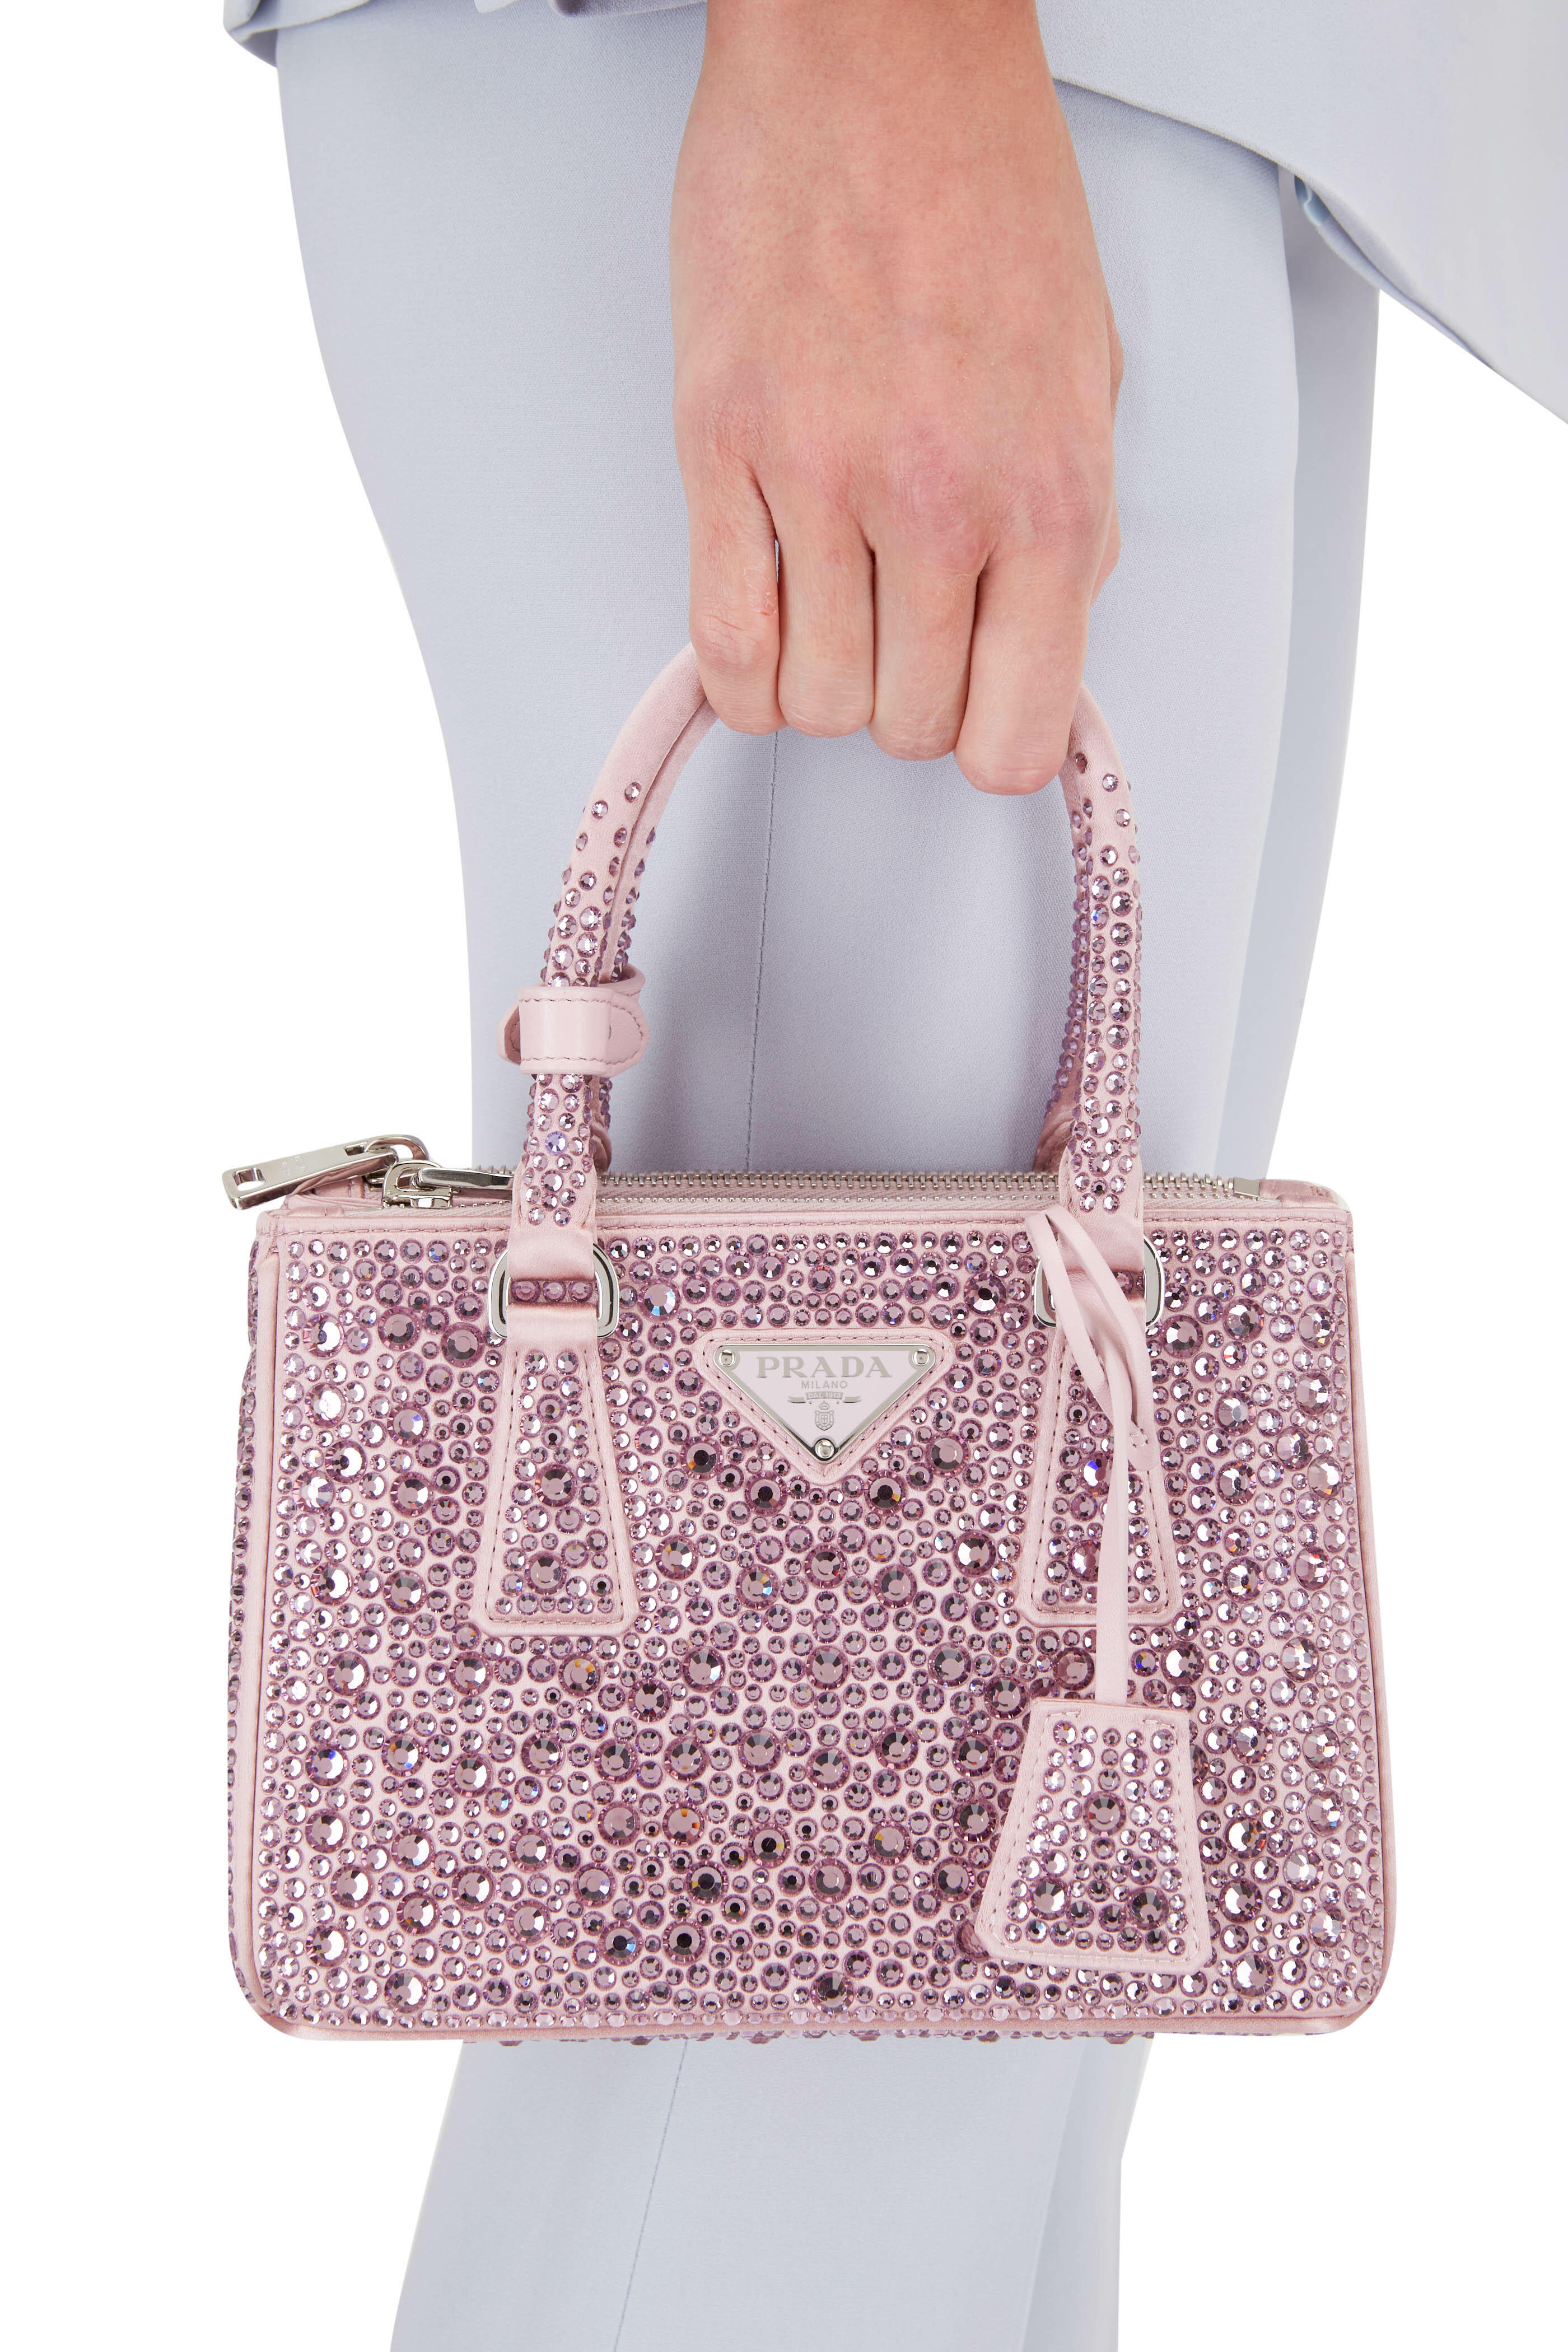 Prada Galleria Shearling Mini Bag in Pink